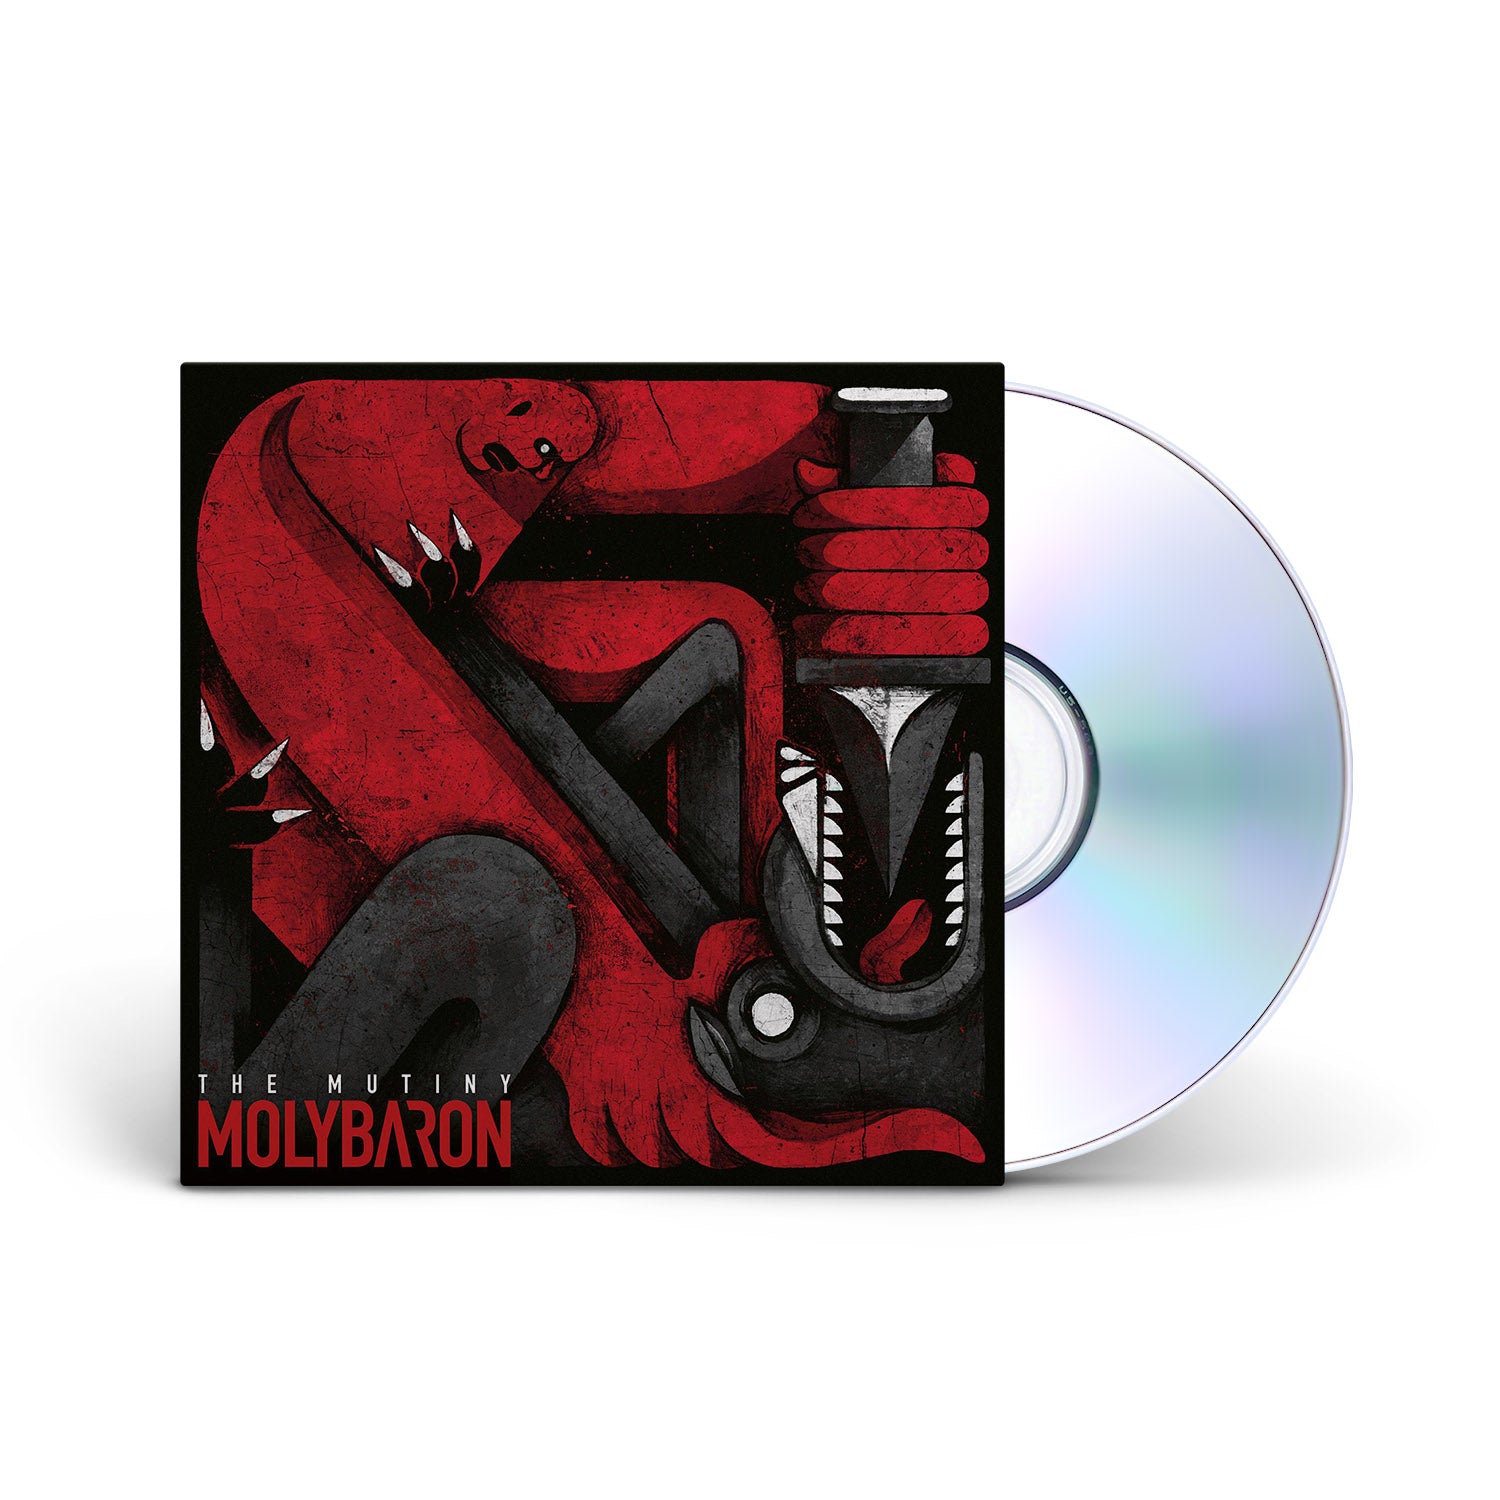 MOLYBARON - The Mutiny - CD